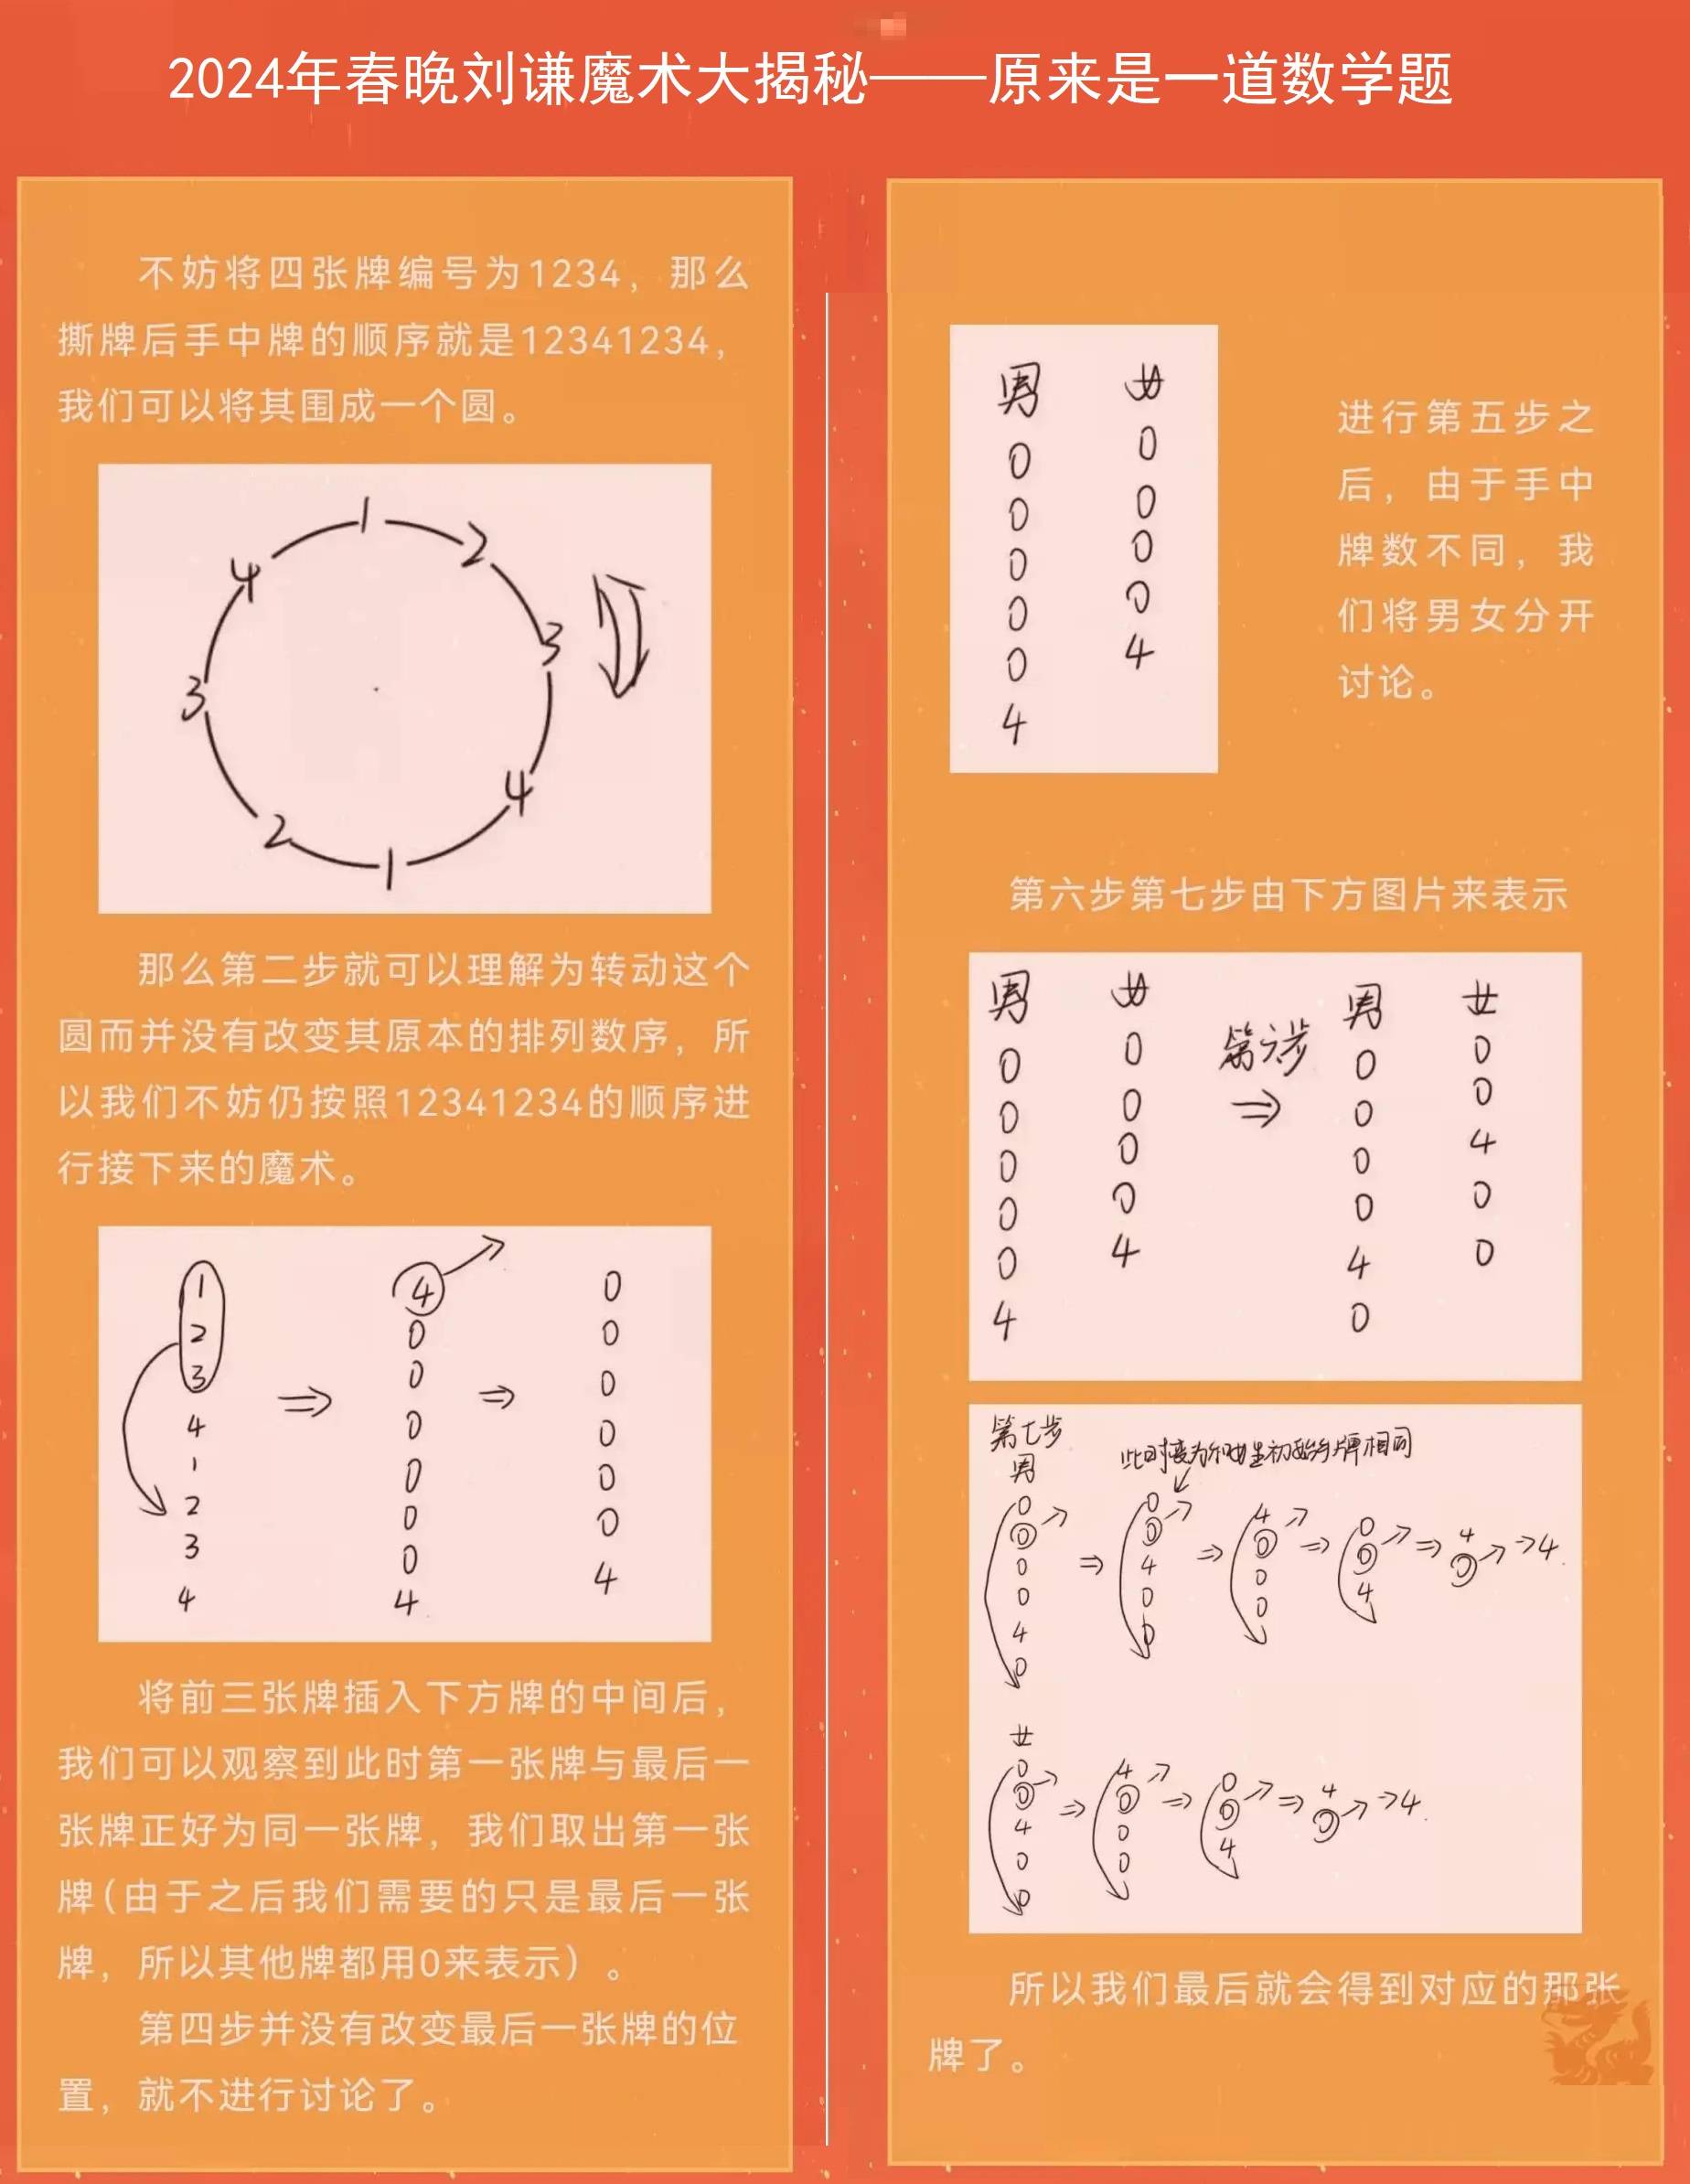 2024年春晚,日语专业的刘谦,再次登台献艺,把数学玩成了魔术